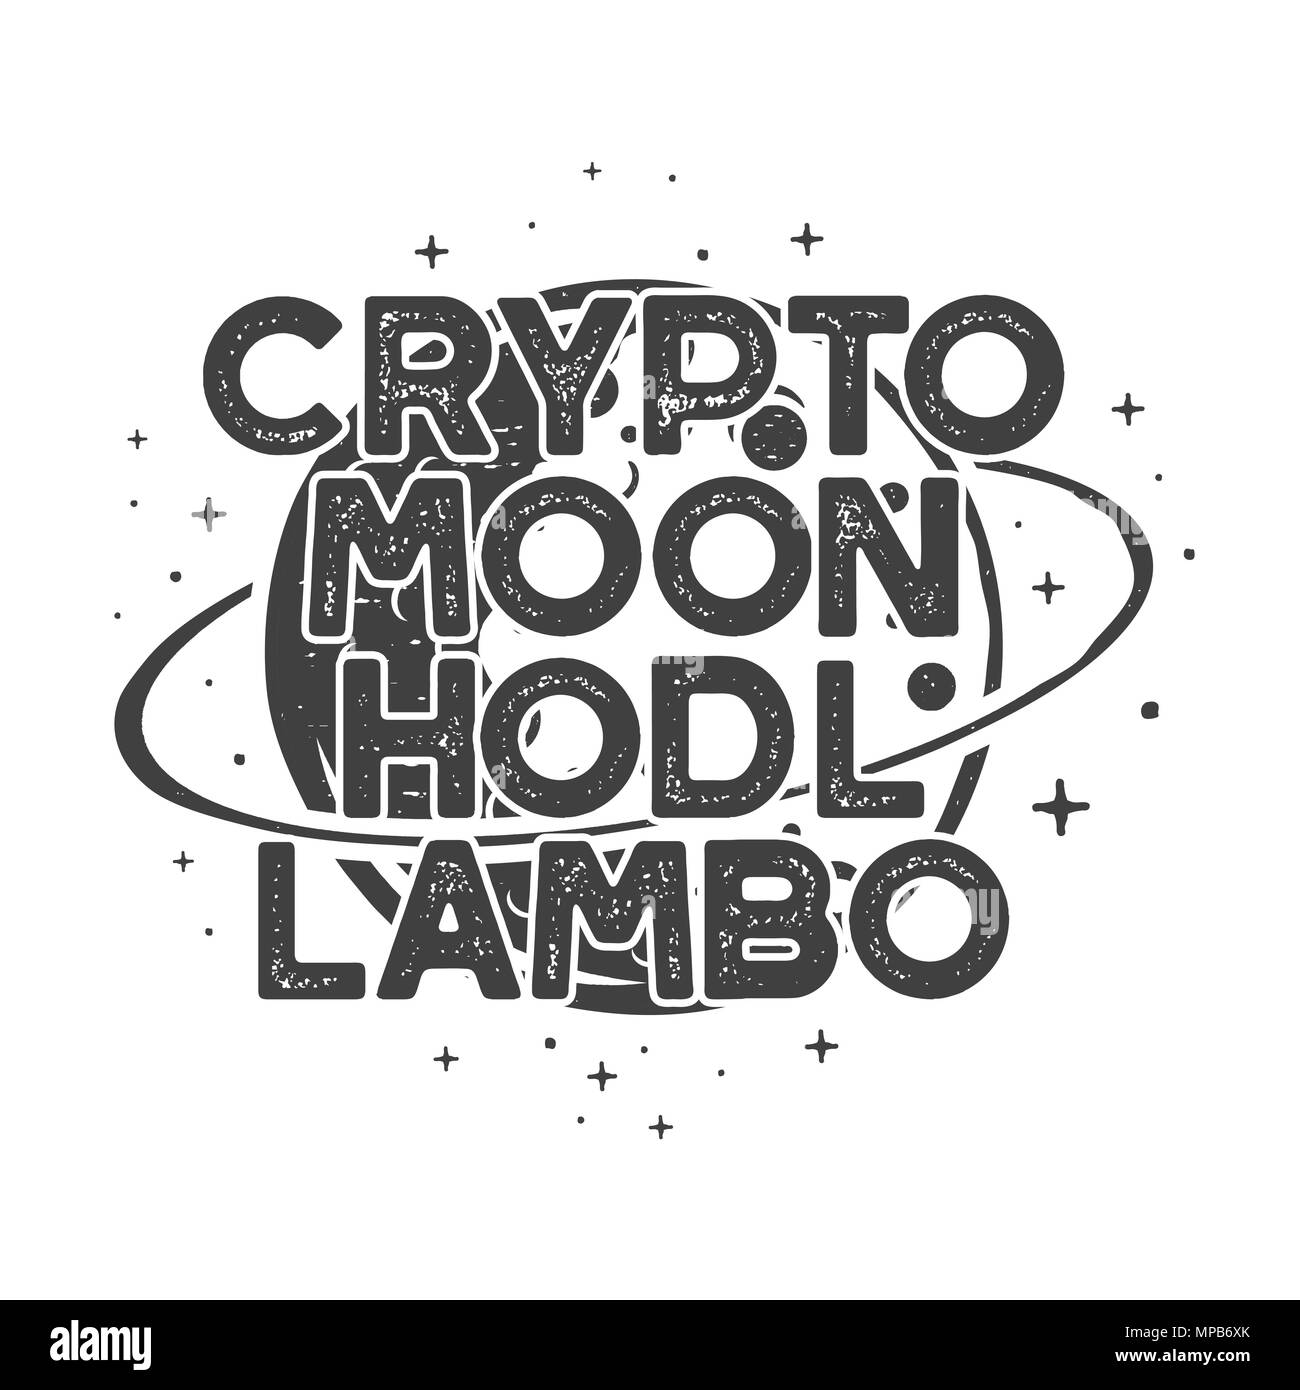 Drôle Cryptocurrency vintage T-shirt ou de l'affiche. Illustration de l'orbite lunaire rétro avec des devises différentes et drôles de mots - crypto, lune, hodl, lambo. Blockchain concept. Tee-cadeaux. Vecteur Stock Illustration de Vecteur